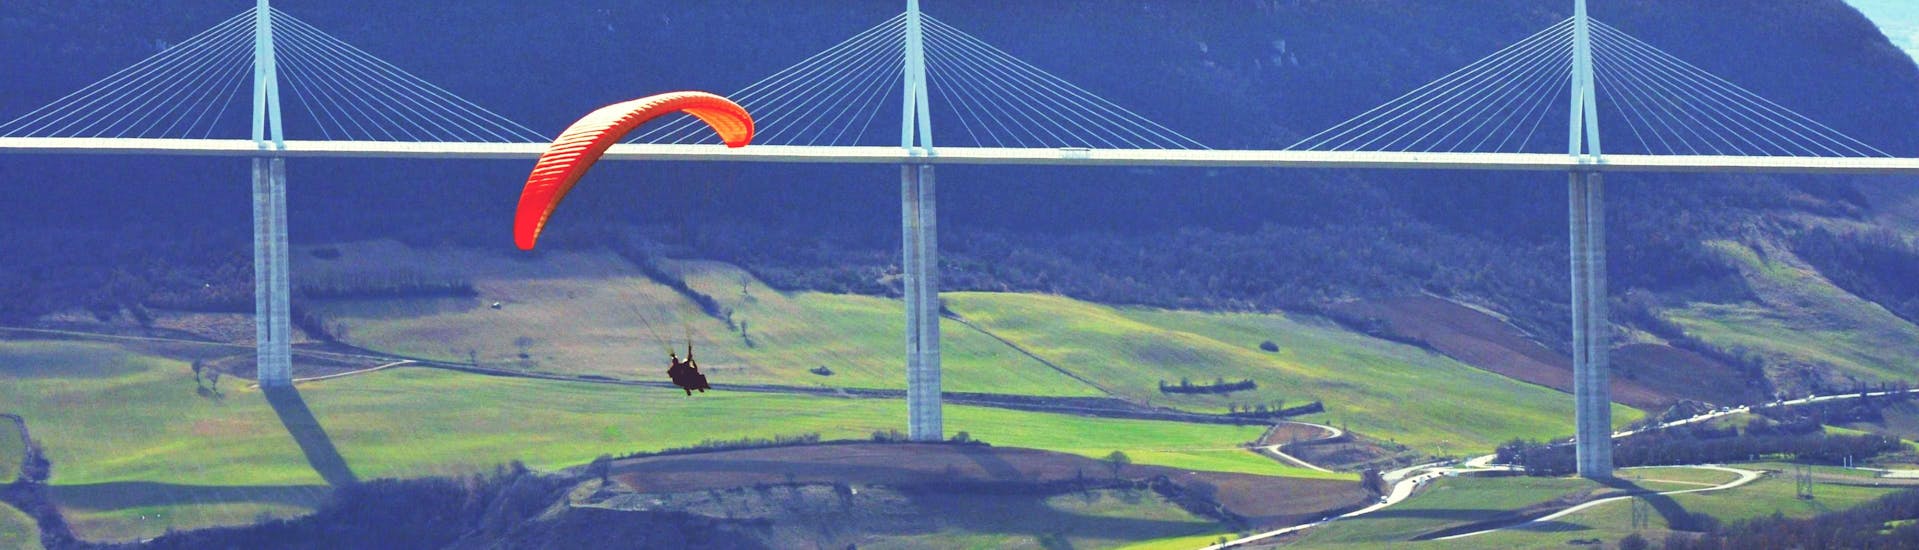 Langstrecken Tandem Paragliding in Millau (ab 4 J.) - Parc naturel régional des Grands Causses.